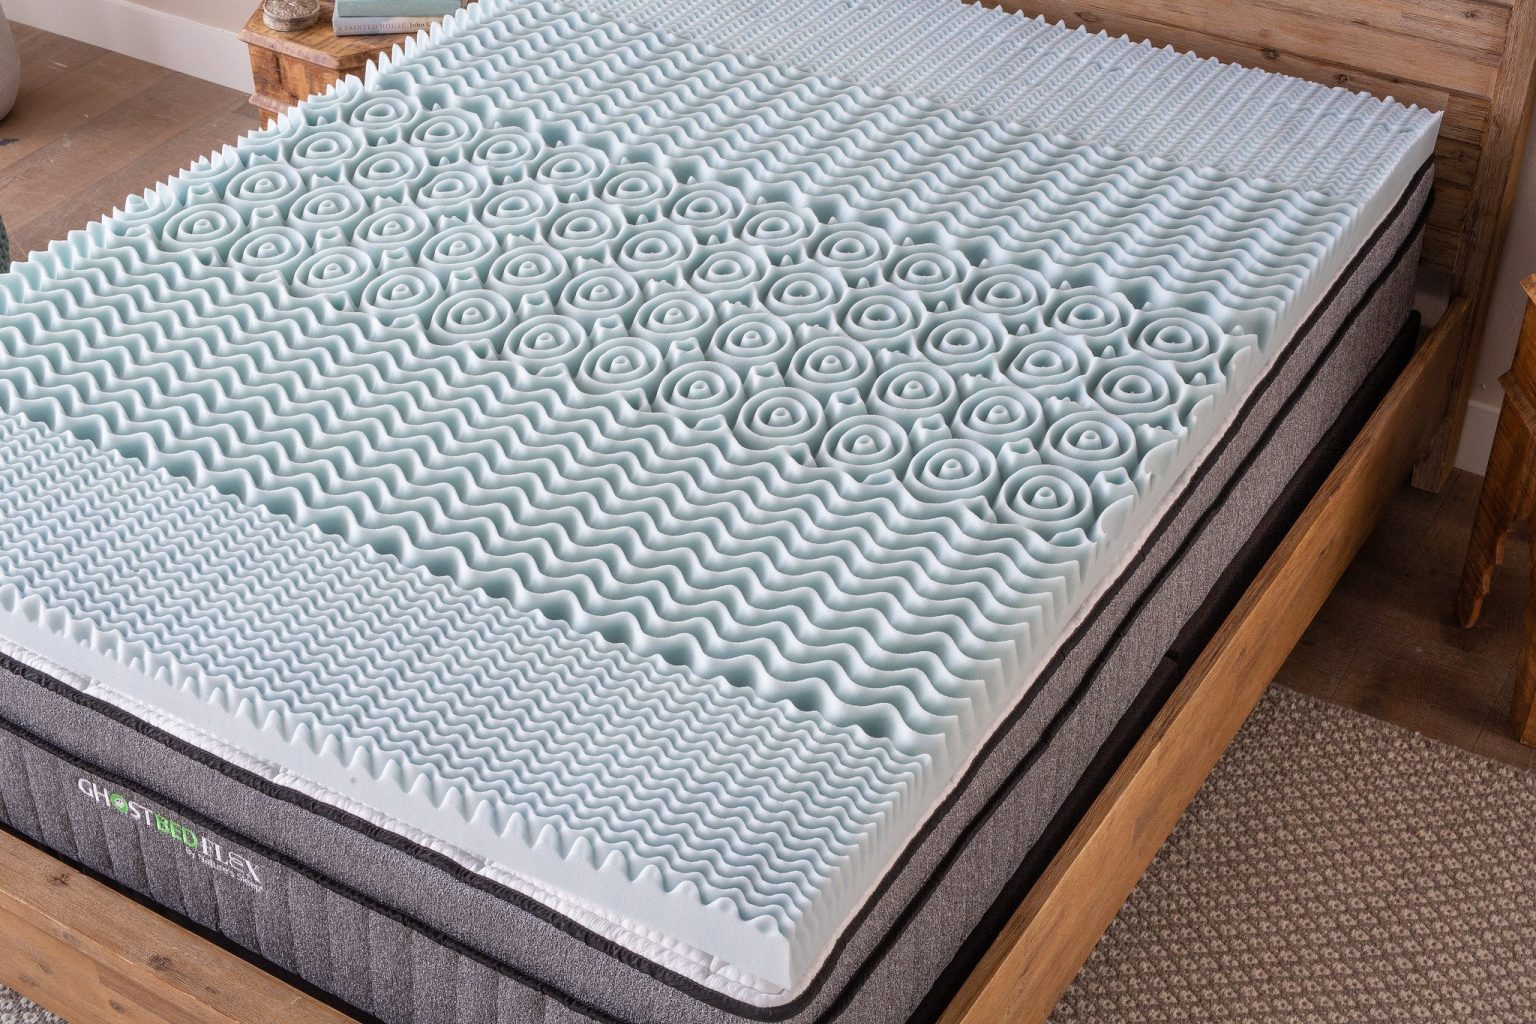 need firmer mattress topper solution